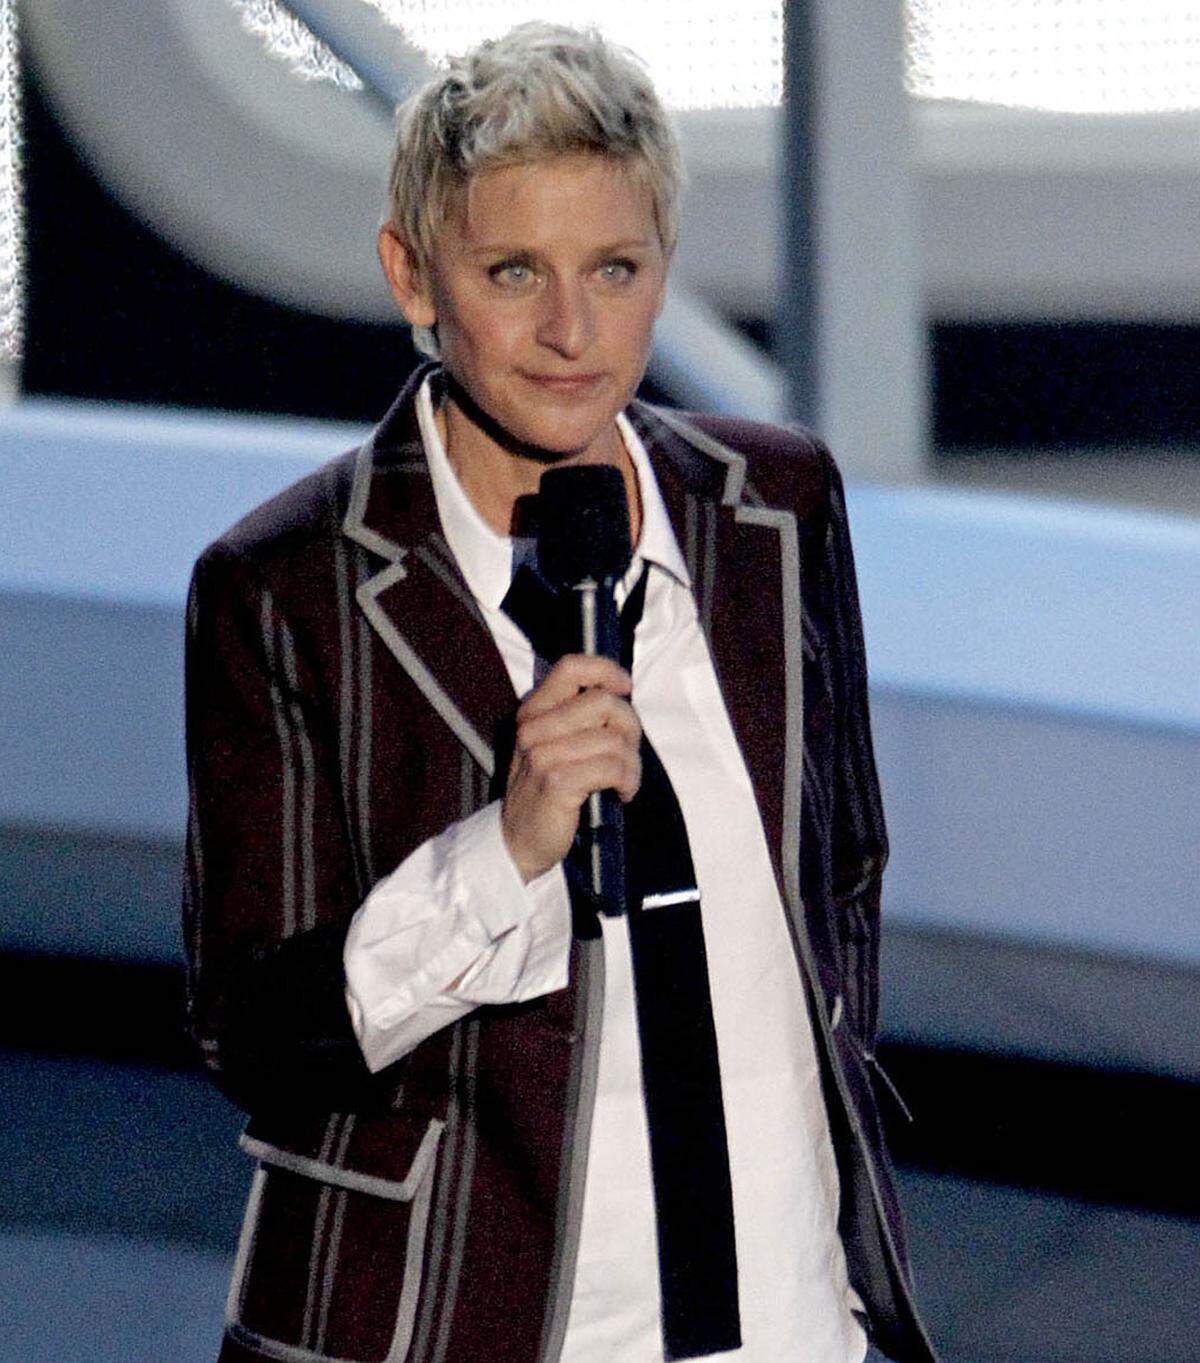 Talkshow-Moderatorin Ellen DeGeneres sahnte 55 Millionen Dollar ab und landete somit auf dem siebenten Platz der Topverdiener-Liste.